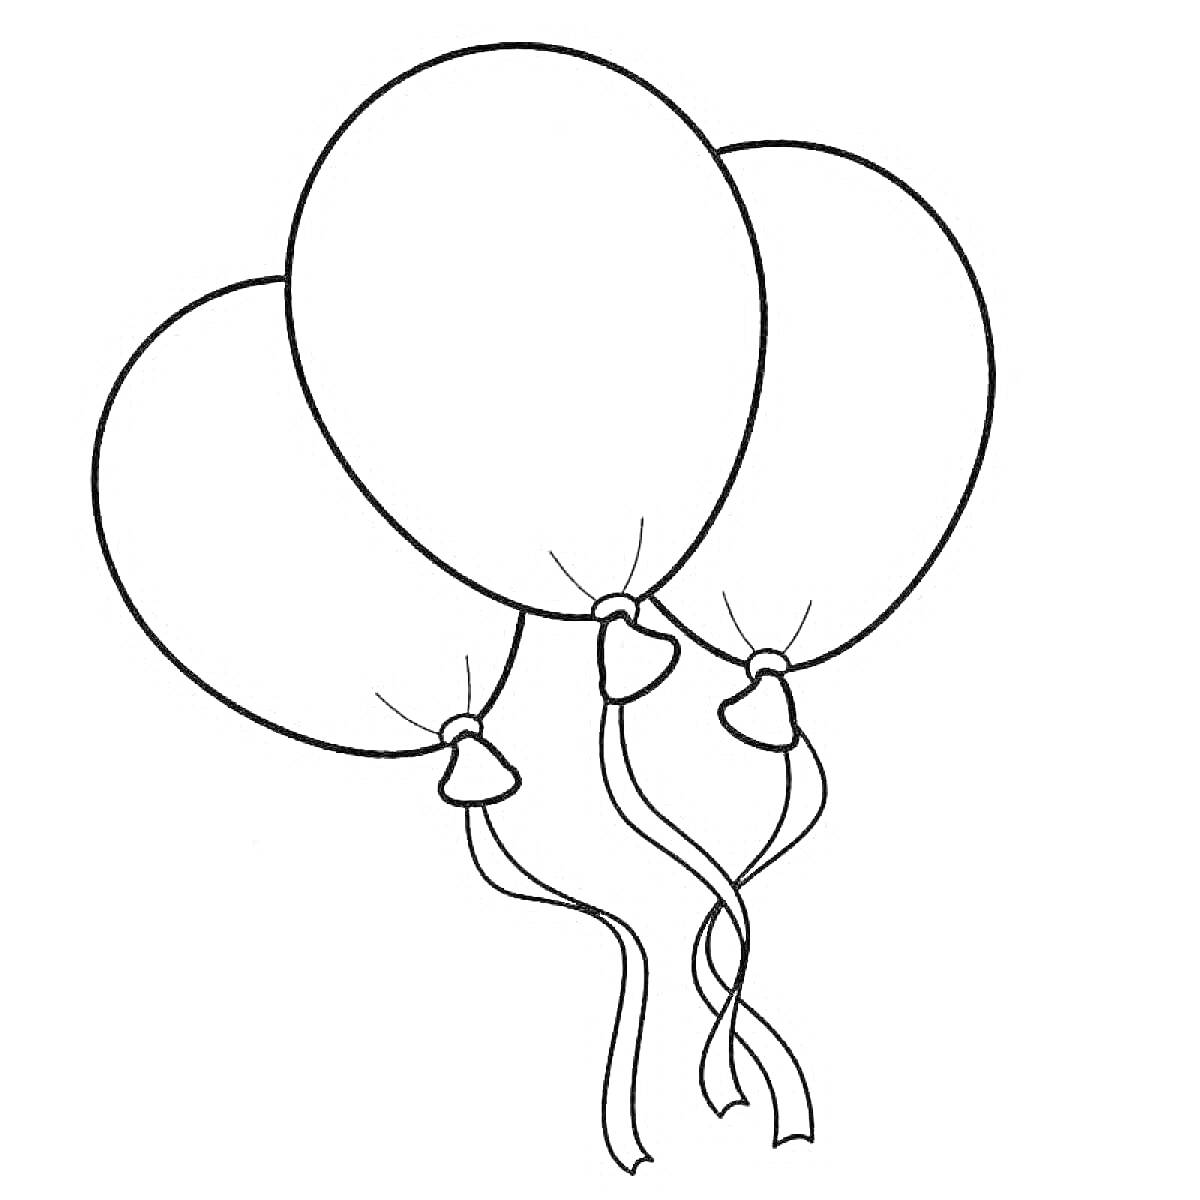 Раскраска Три воздушных шара с ленточками